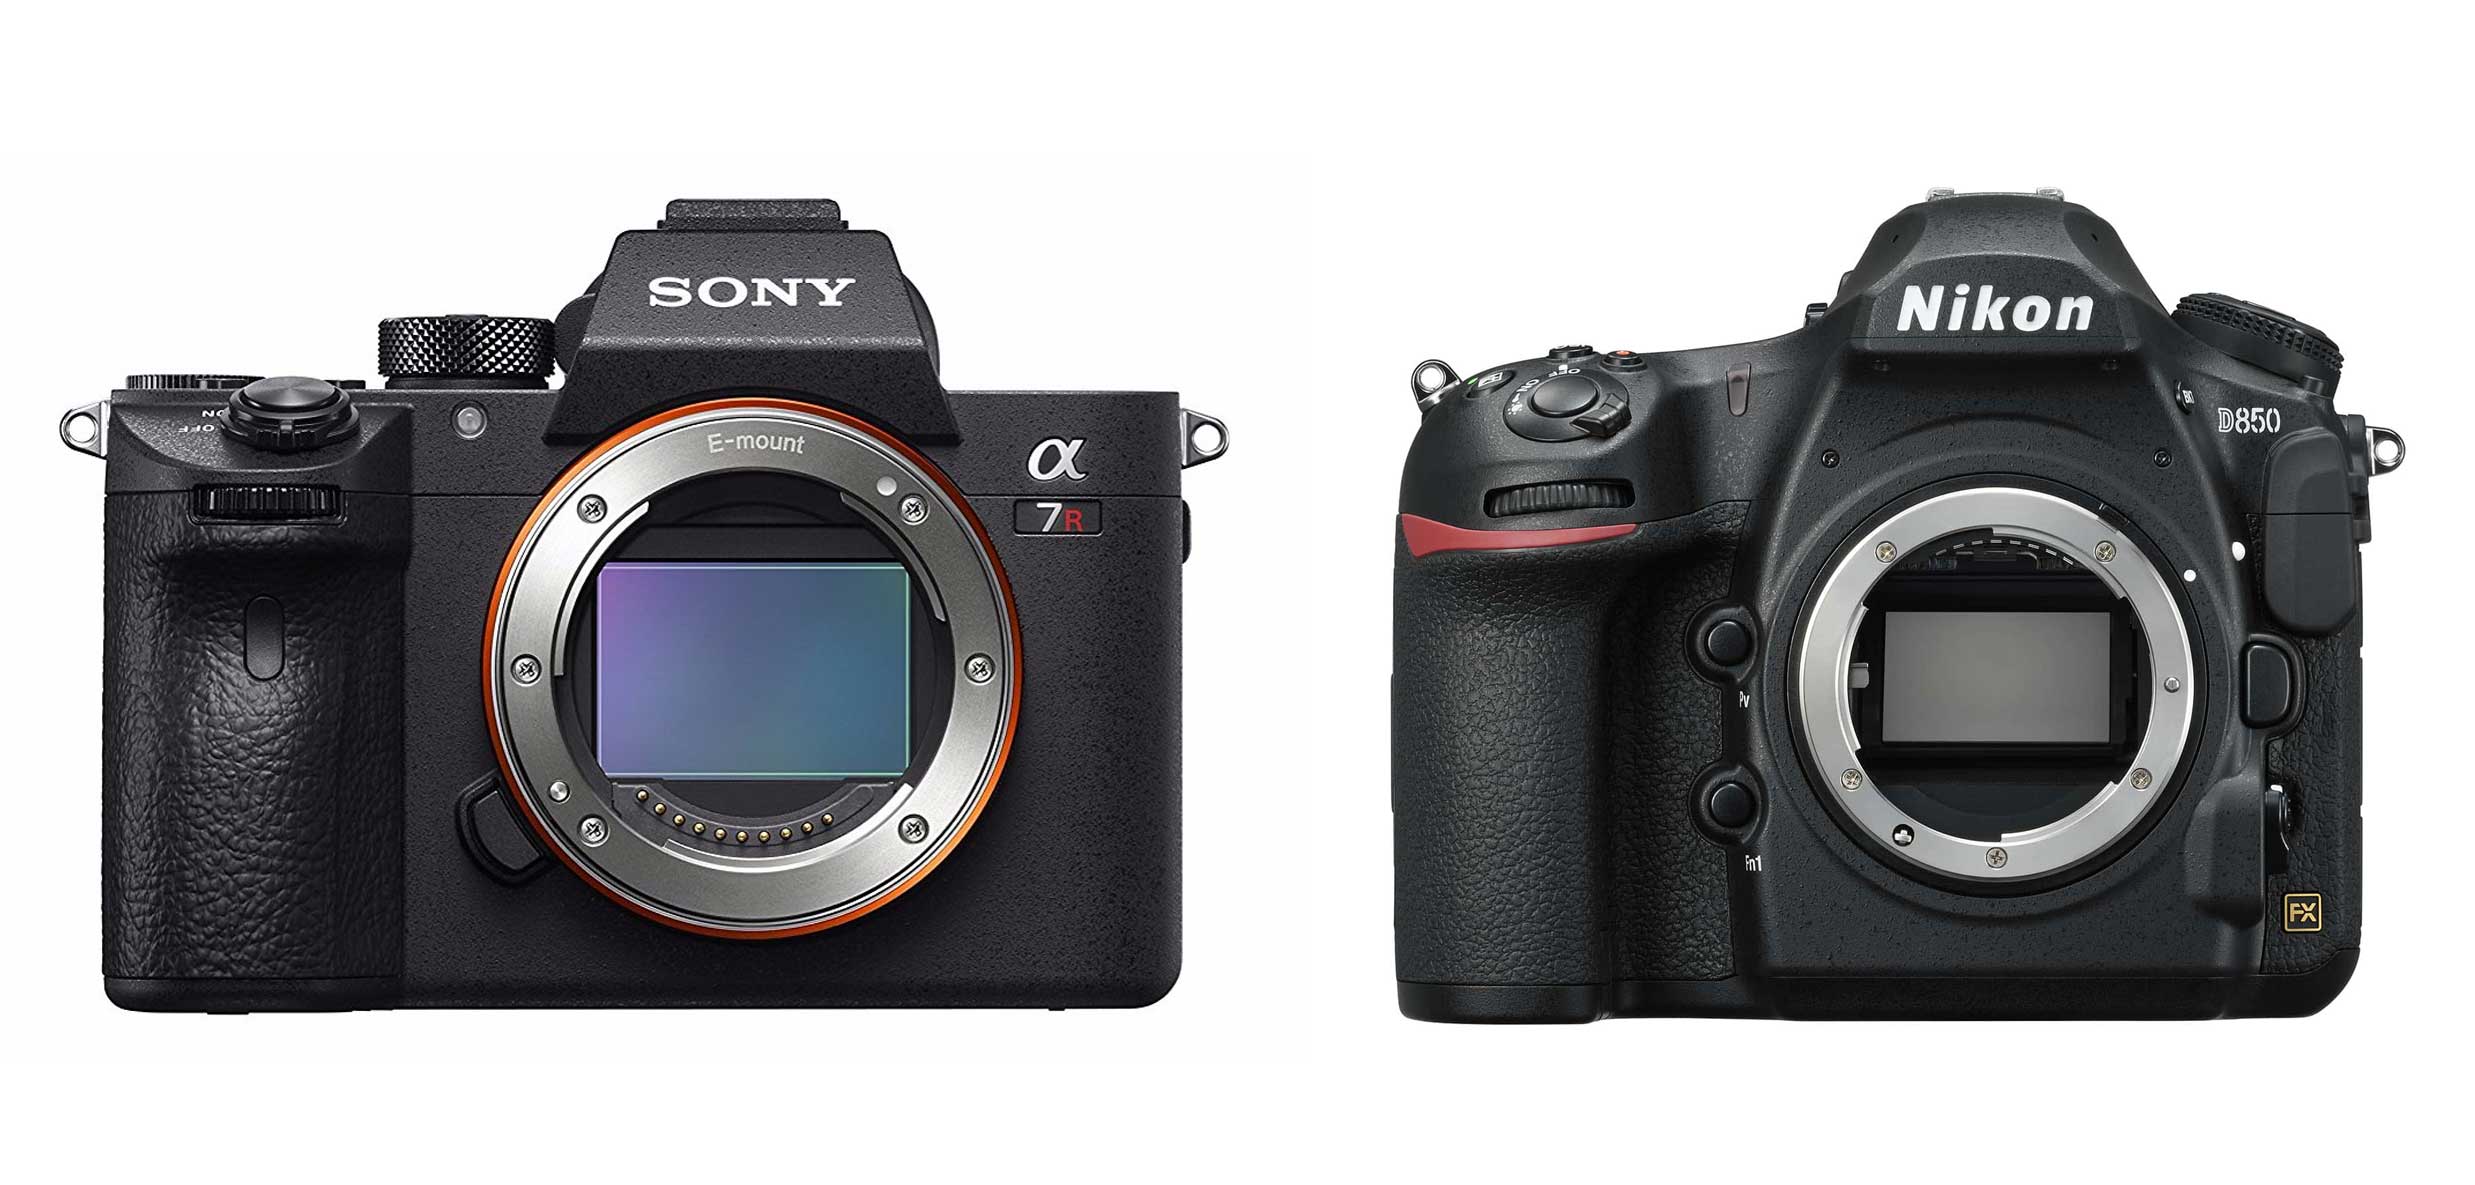 Sony a7R III vs Nikon D850: Which is Best?